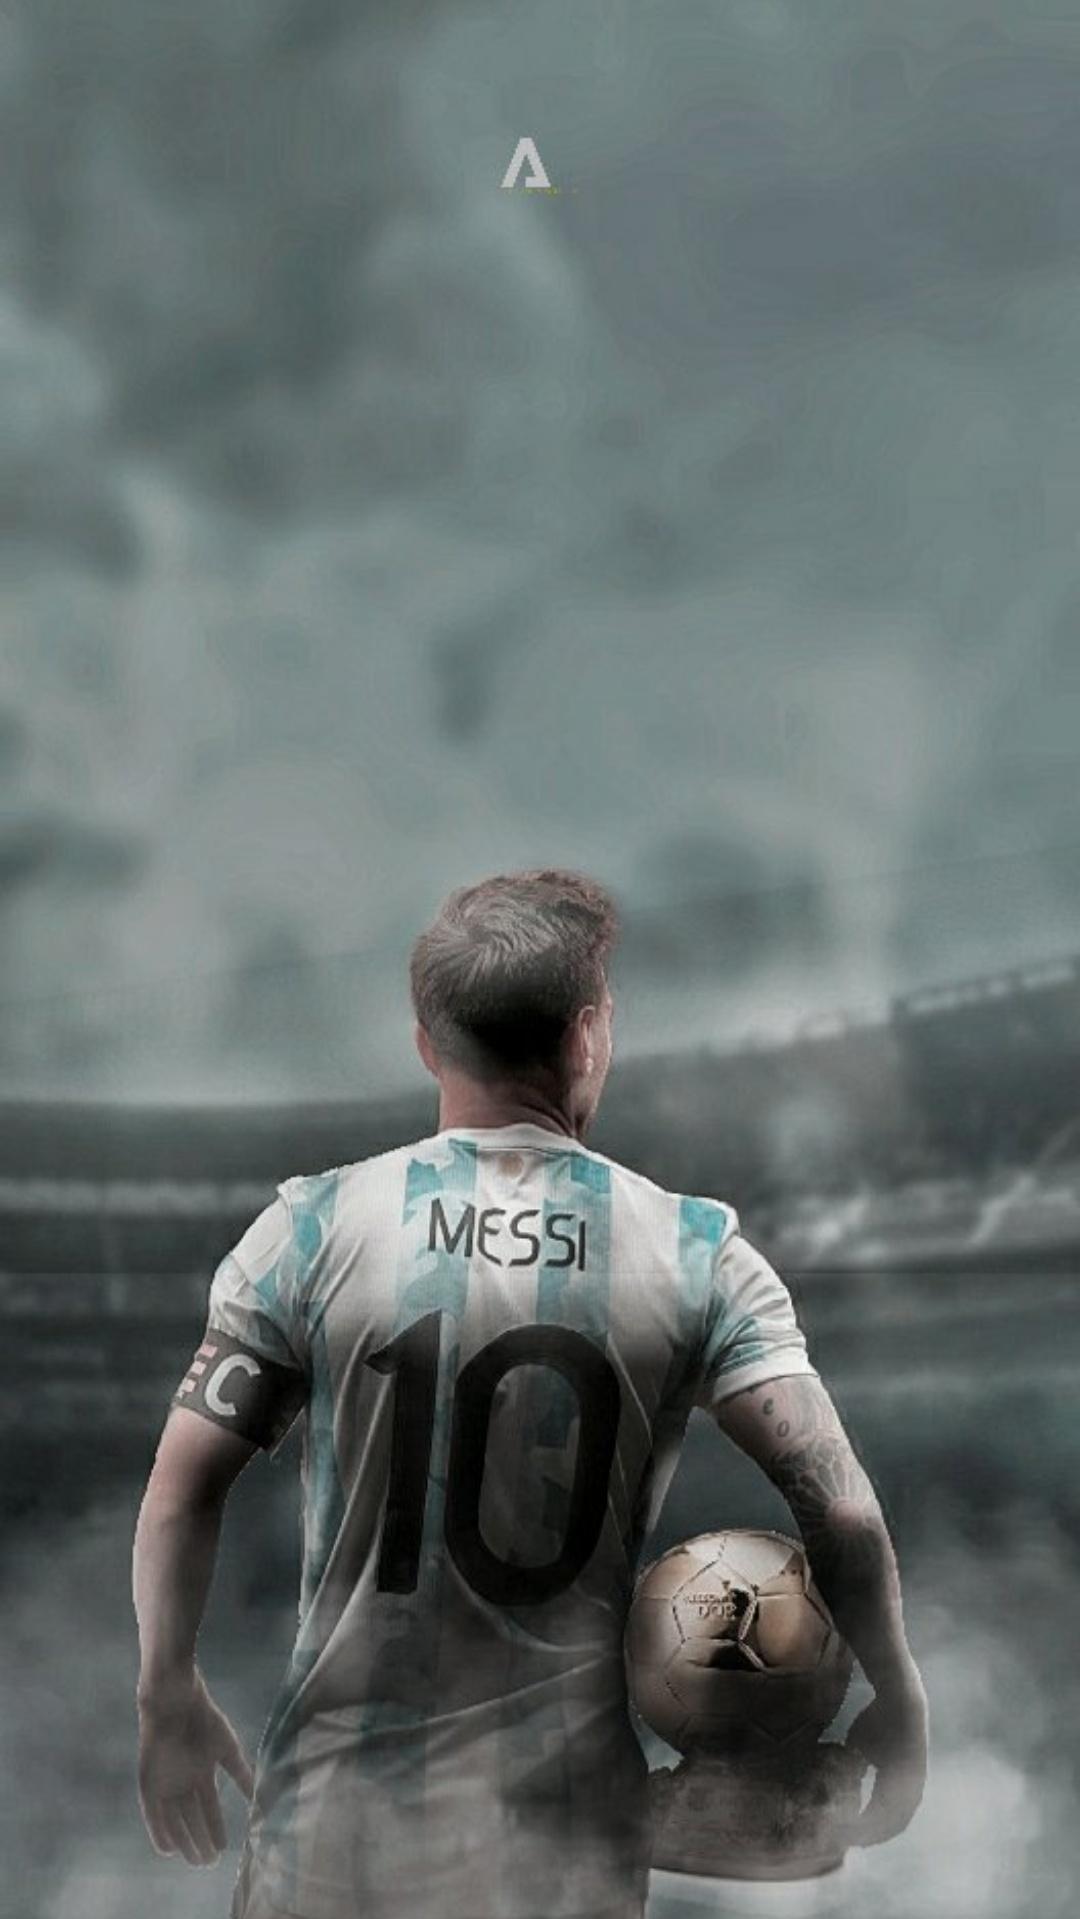 Sự kết hợp giữa những khoảnh khắc đẹp nhất của Messi trong World Cup và hình nền với chất lượng tốt nhất làm cho bộ sưu tập hình ảnh này trở thành một điều tuyệt vời. Nó sẽ giúp bạn tỏa sáng trên màn hình máy tính của mình và giờ đây bạn có thể ủng hộ Messi và đội tuyển Argentina của mình một cách đầy tự hào.